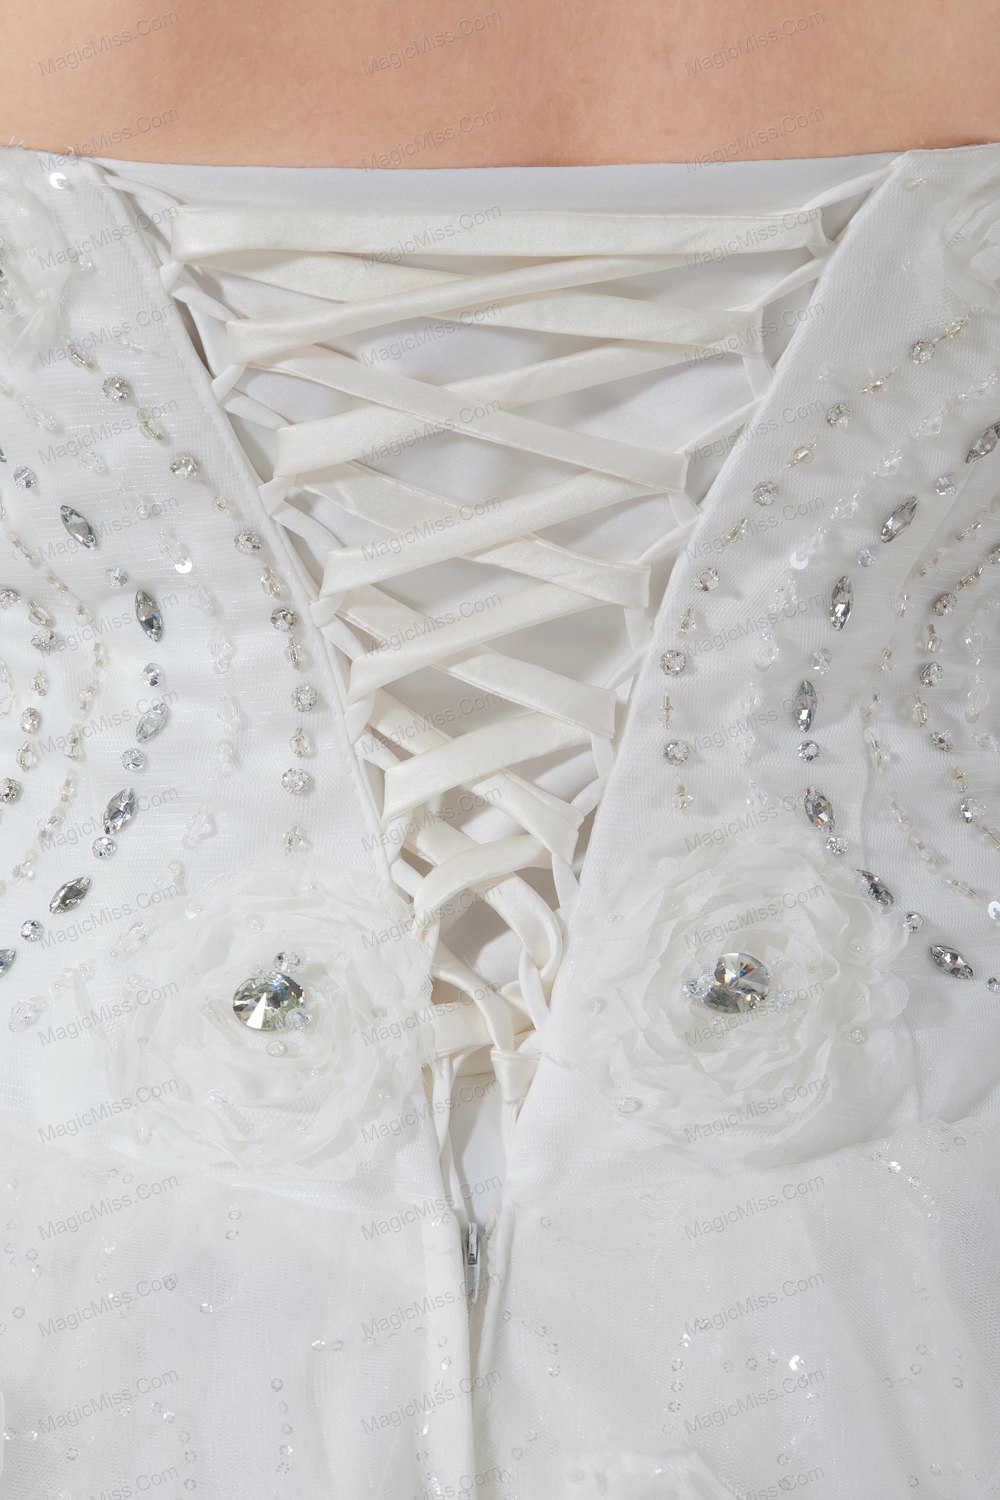 wholesale elegant ball gown strapless floor-length tulle beading wedding dress